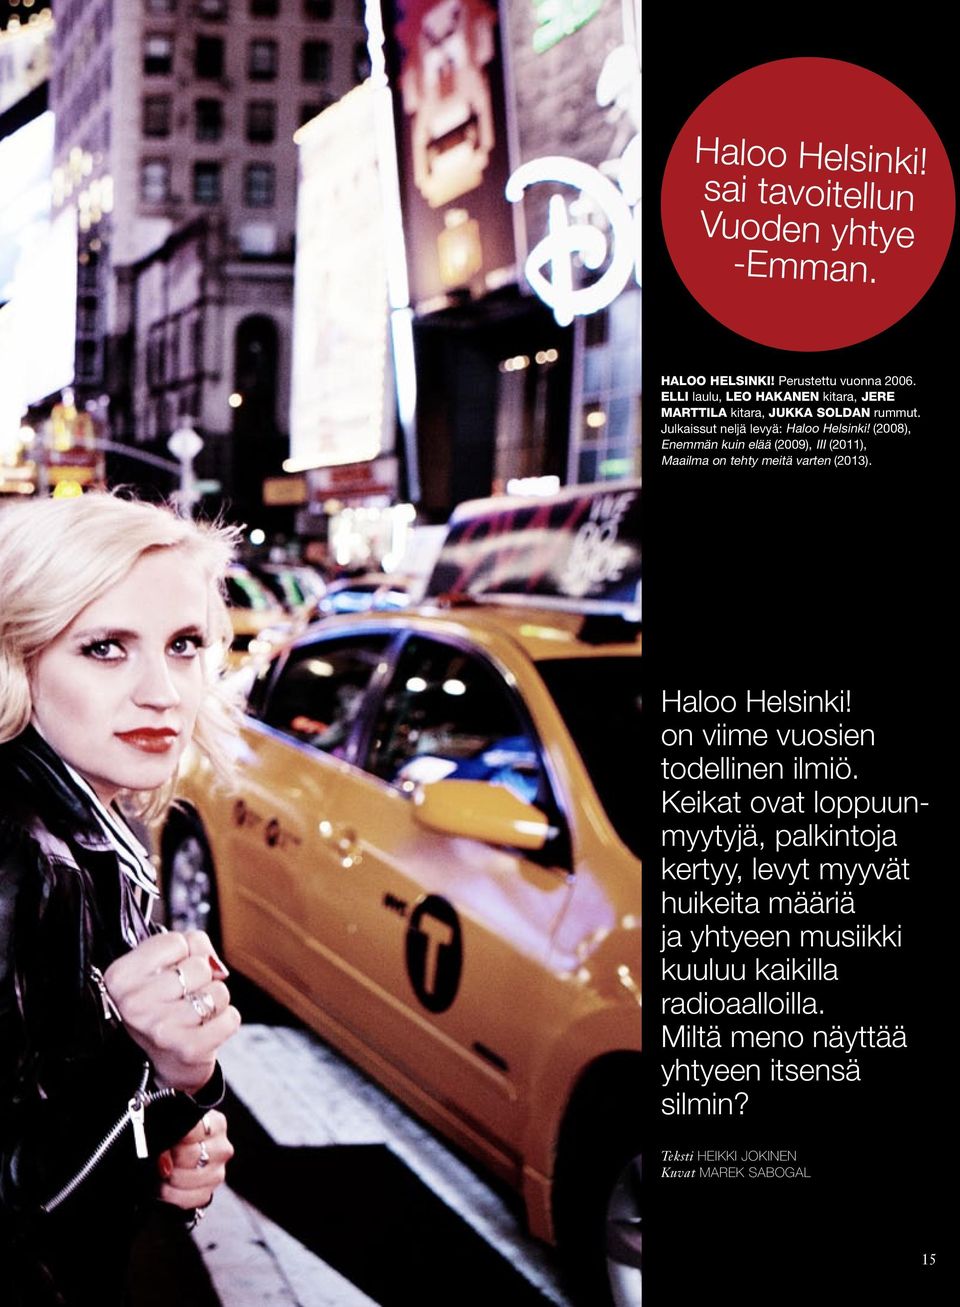 (2008), Enemmän kuin elää (2009), III (2011), Maailma on tehty meitä varten (2013). Haloo Helsinki! on viime vuosien todellinen ilmiö.